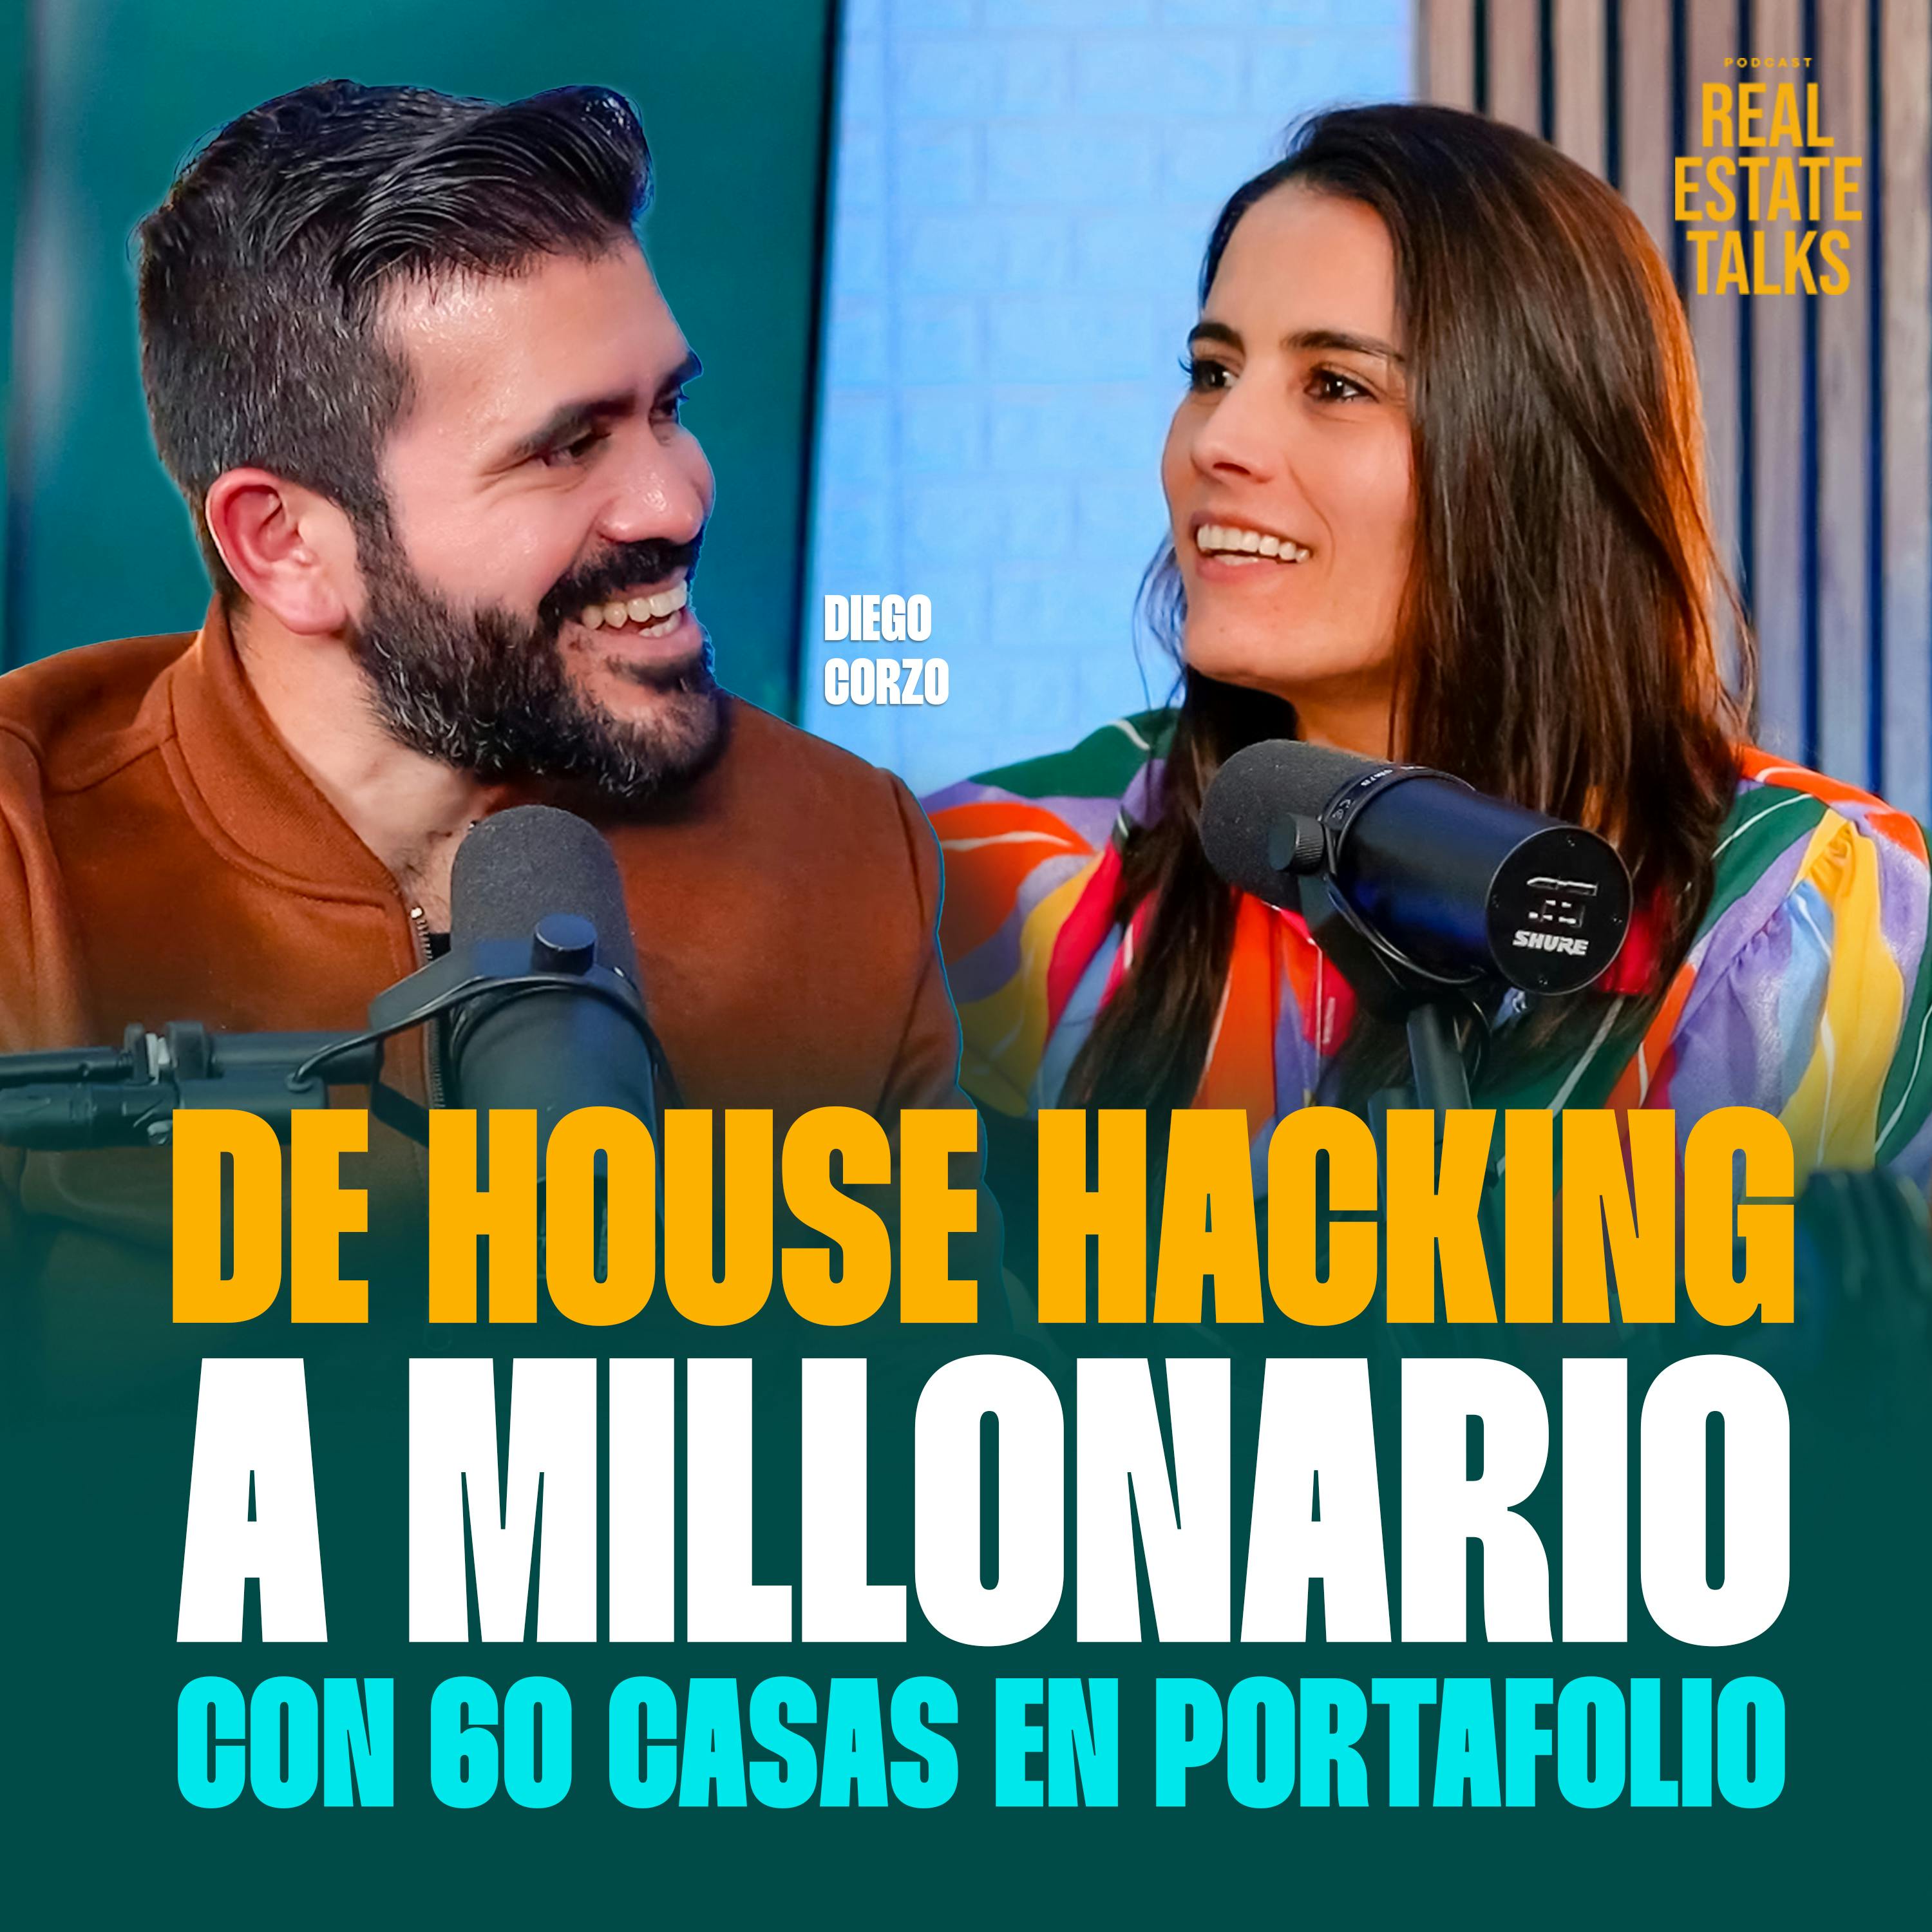 EP 59 - Diego Corzo - De House Hacking a Millonario con 60 Casas en Portafolio